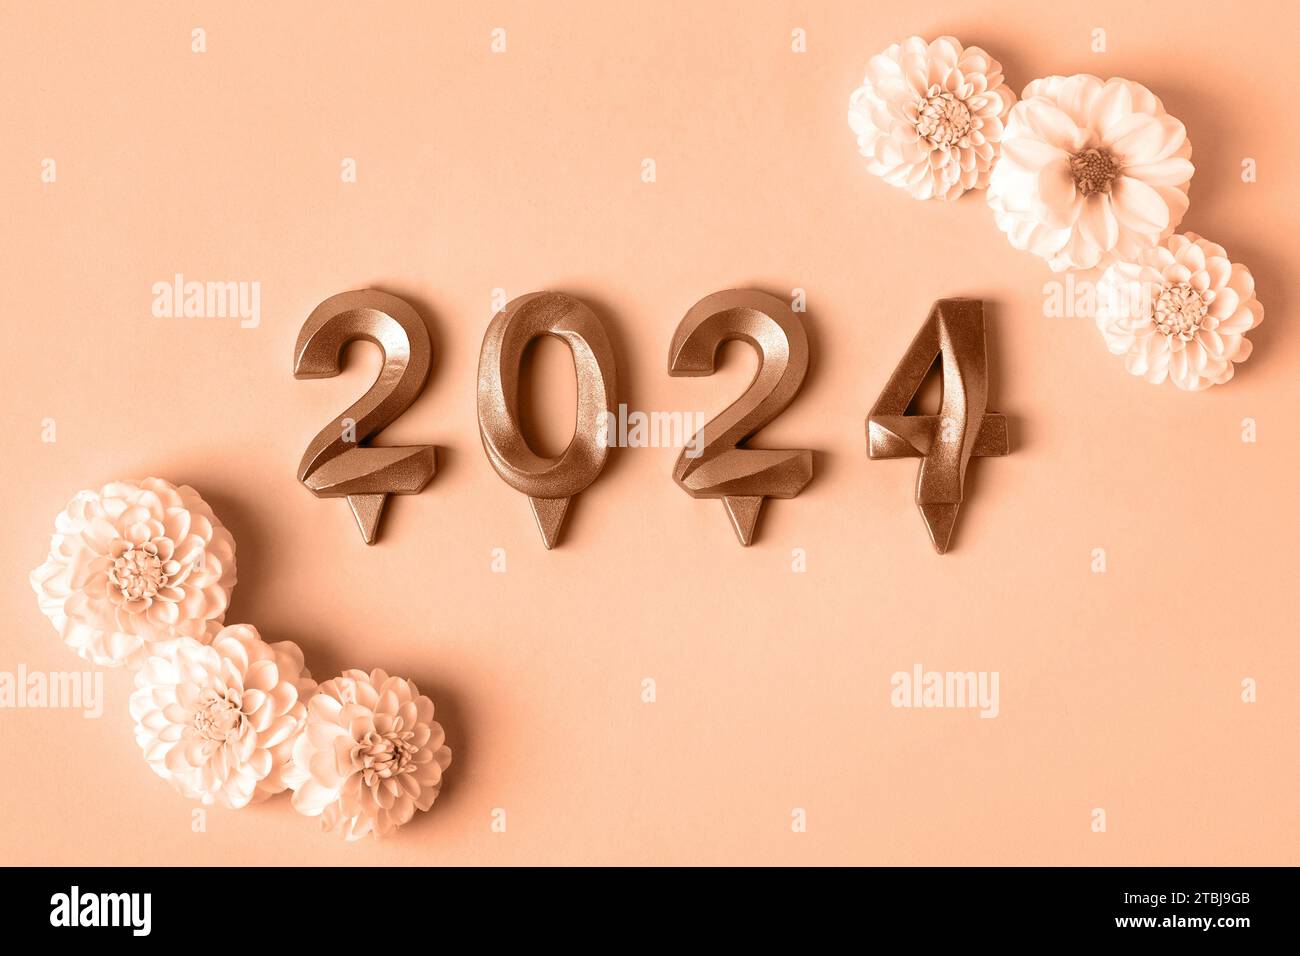 Zahlen und Dahlienblüten. Ideenkonzept für das neue Jahr 2024. Trendige Farbe des Jahres 2024 - Peach Fuzz. Beispiel für trendige Farbpalette. Stockfoto